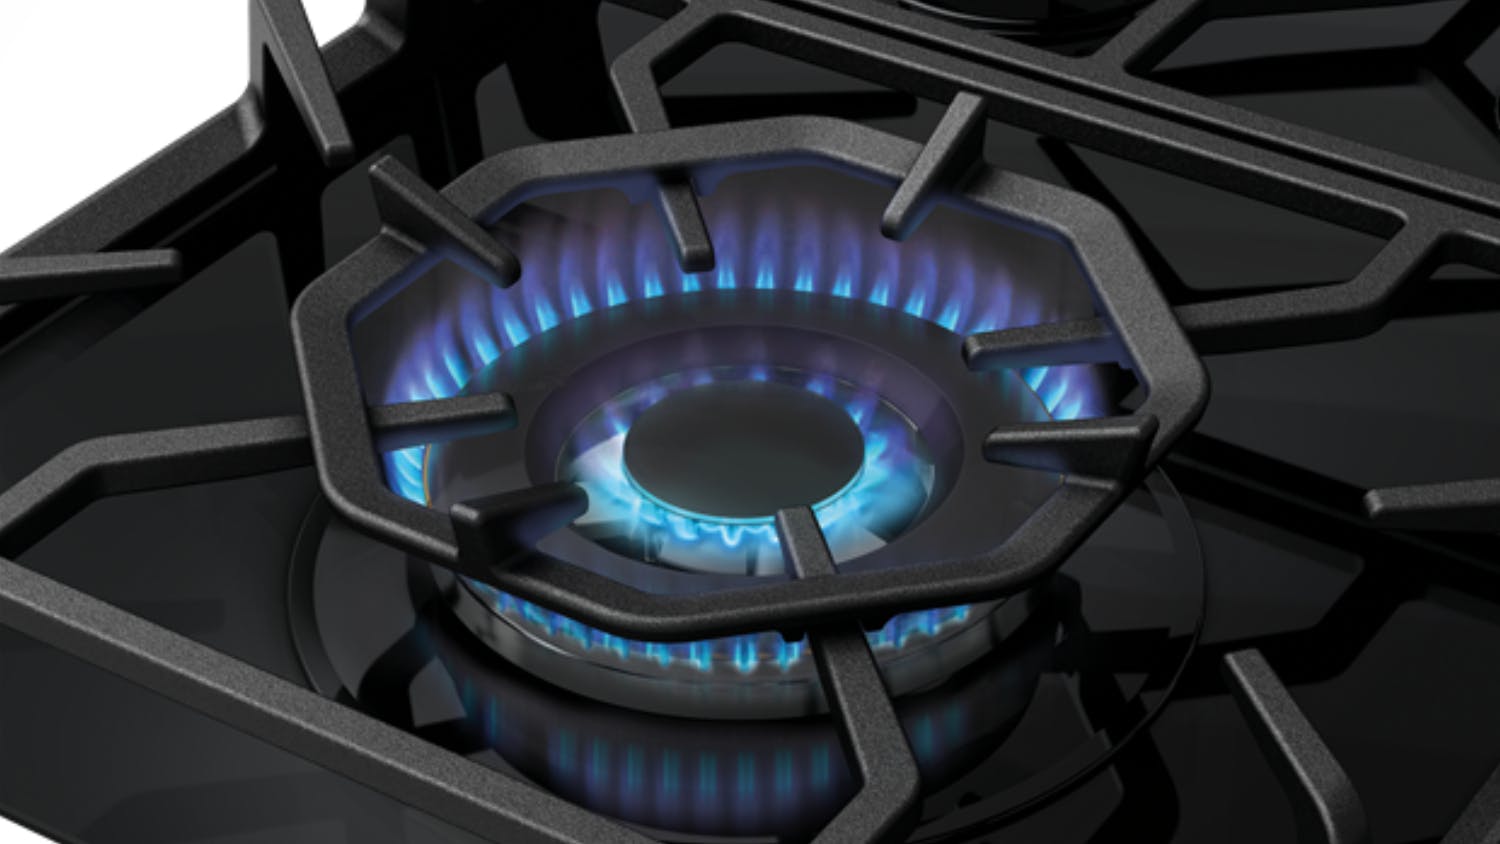 Westinghouse 60cm 3 Burner Natural Gas on Glass Cooktop - Black (WHG639BD)